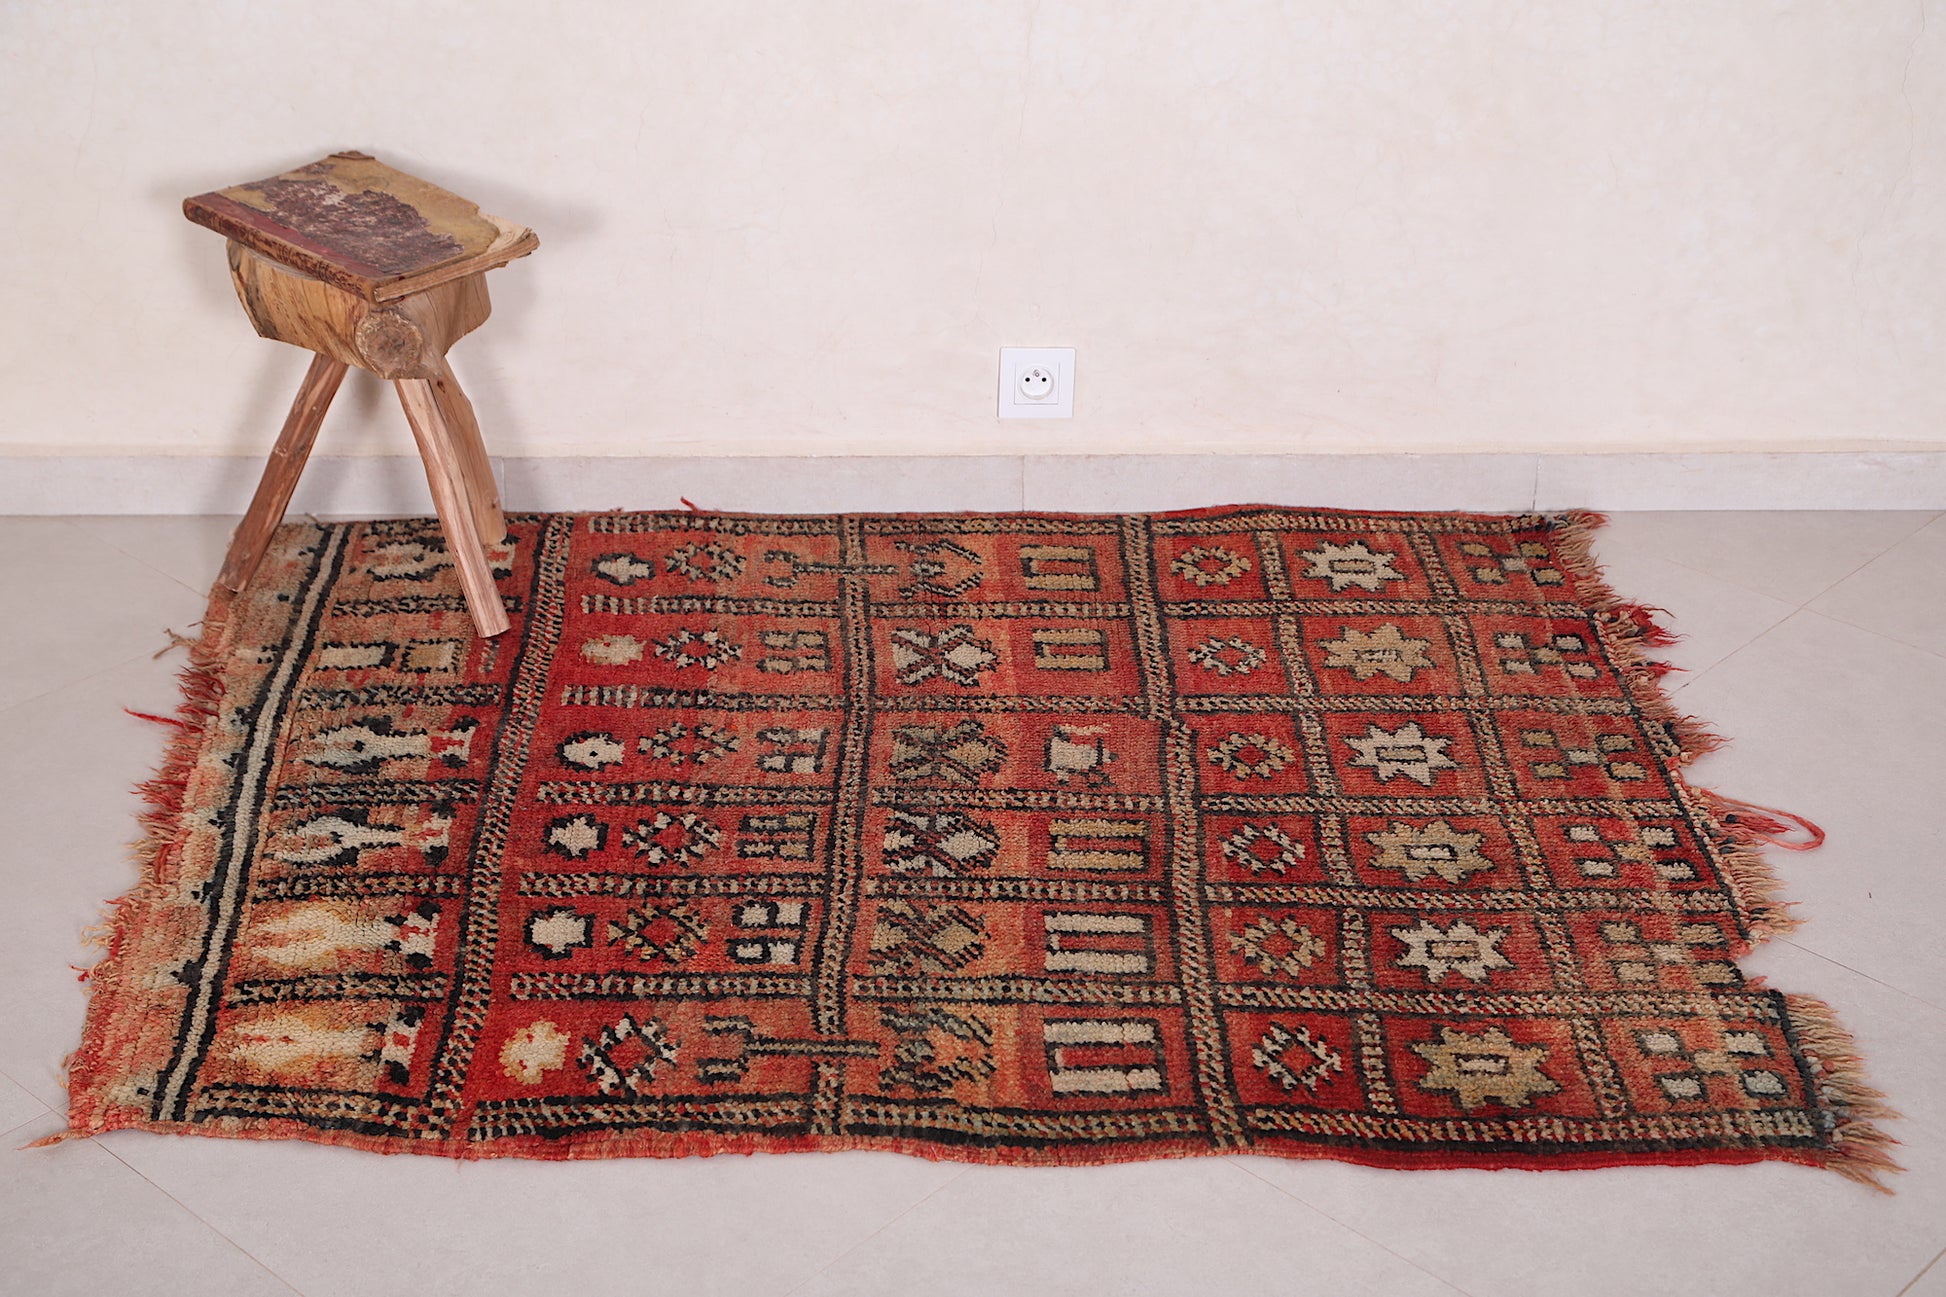 Moroccan rug 3.9 X 4.8 Feet